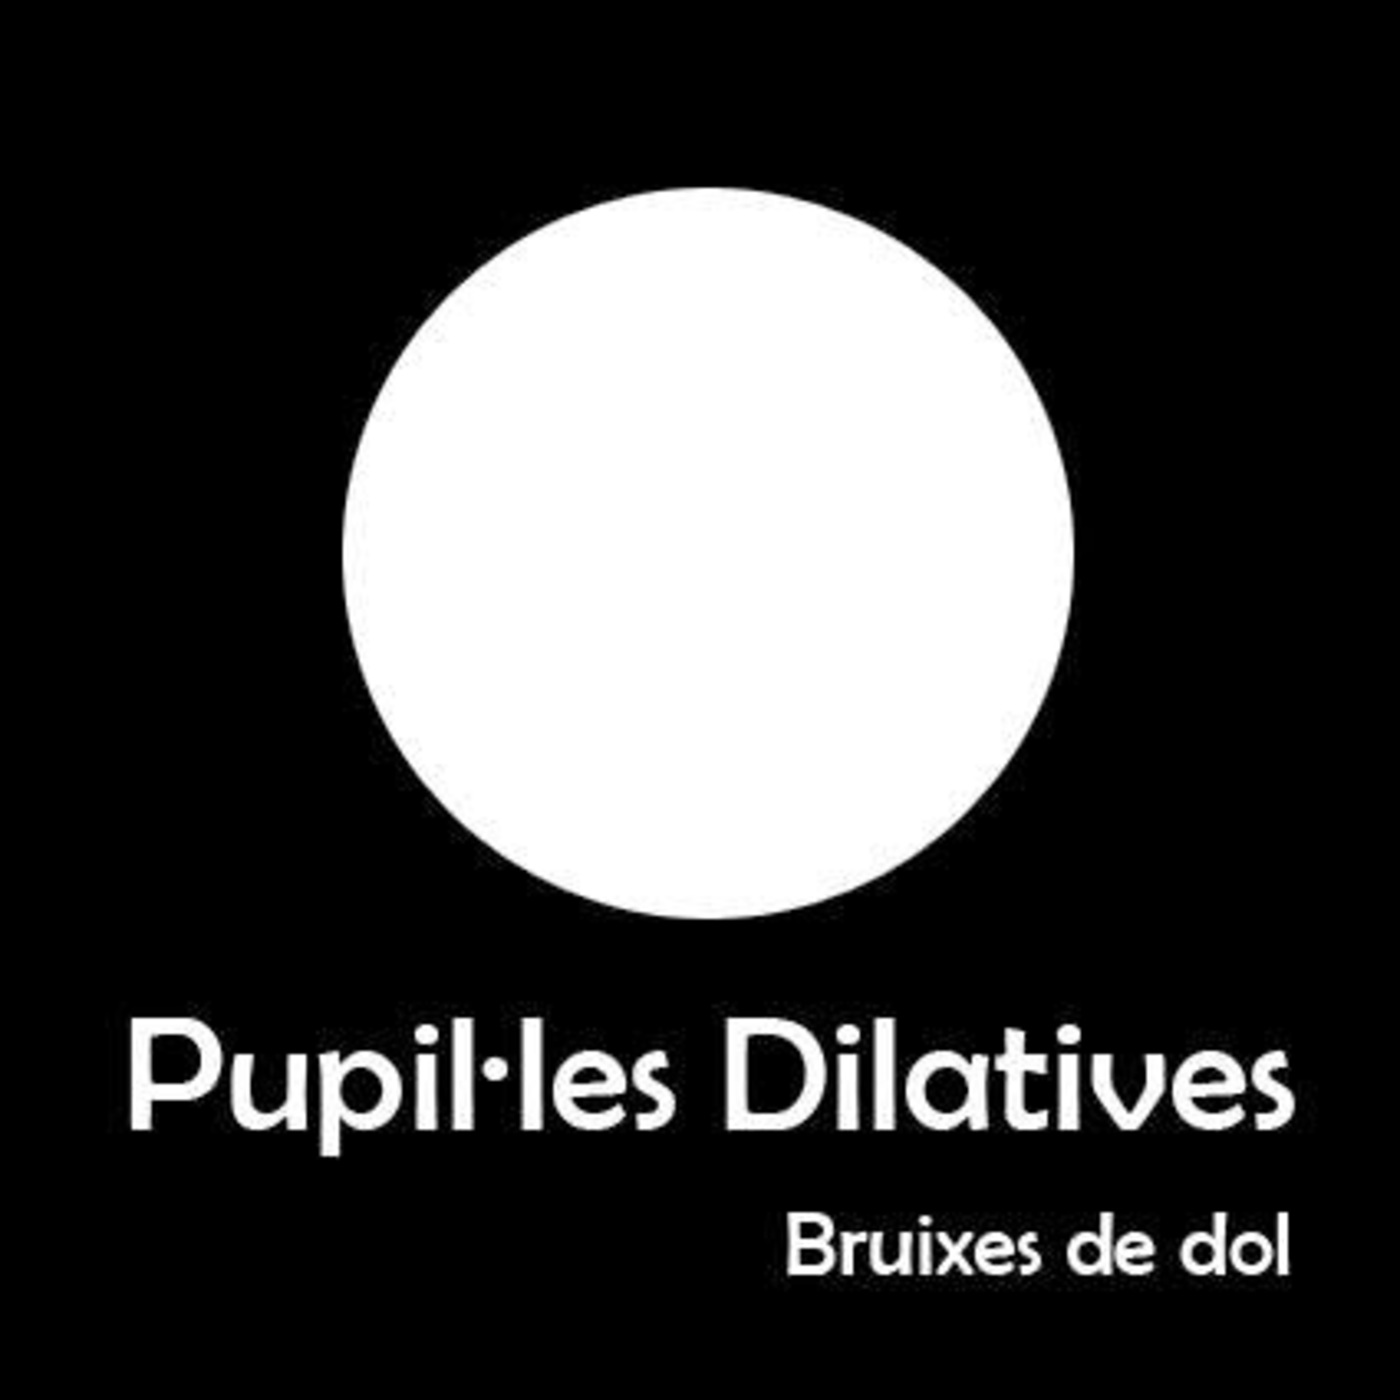 Pupil·les - Bruixes de dol | musica en valencià